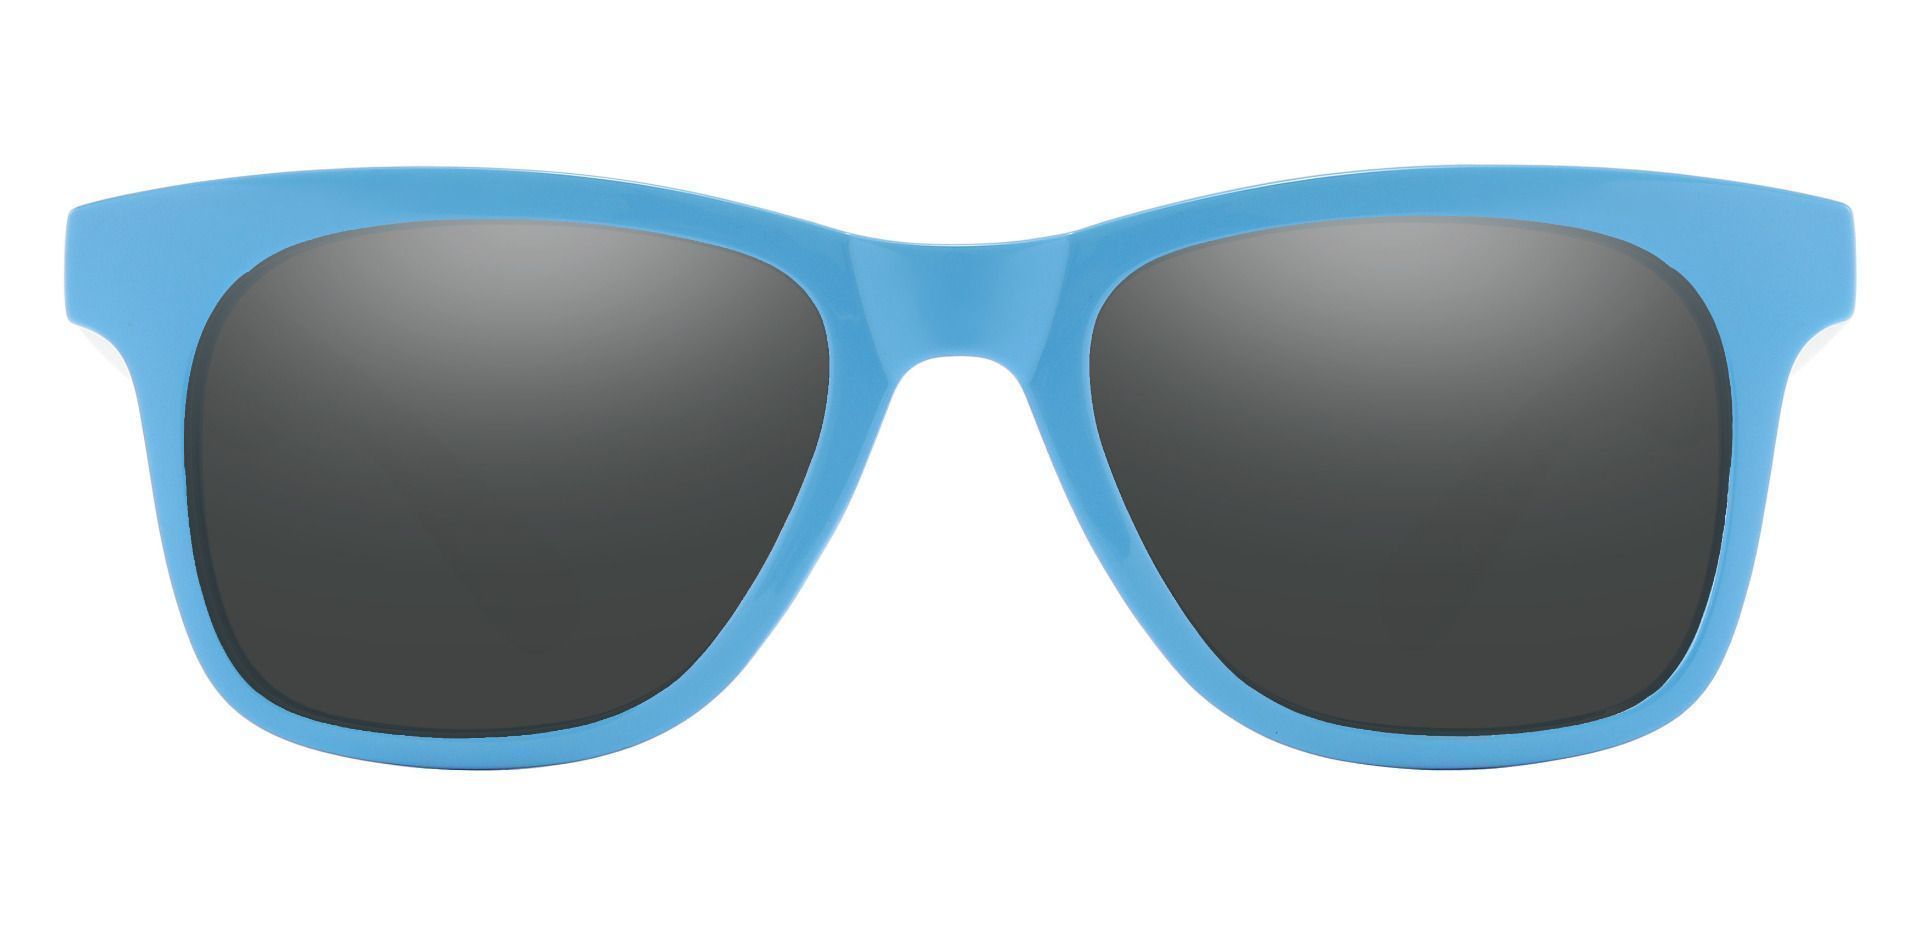 Hurley Men Polarized Sunglasses White Frame Blue Mirror Lens Size